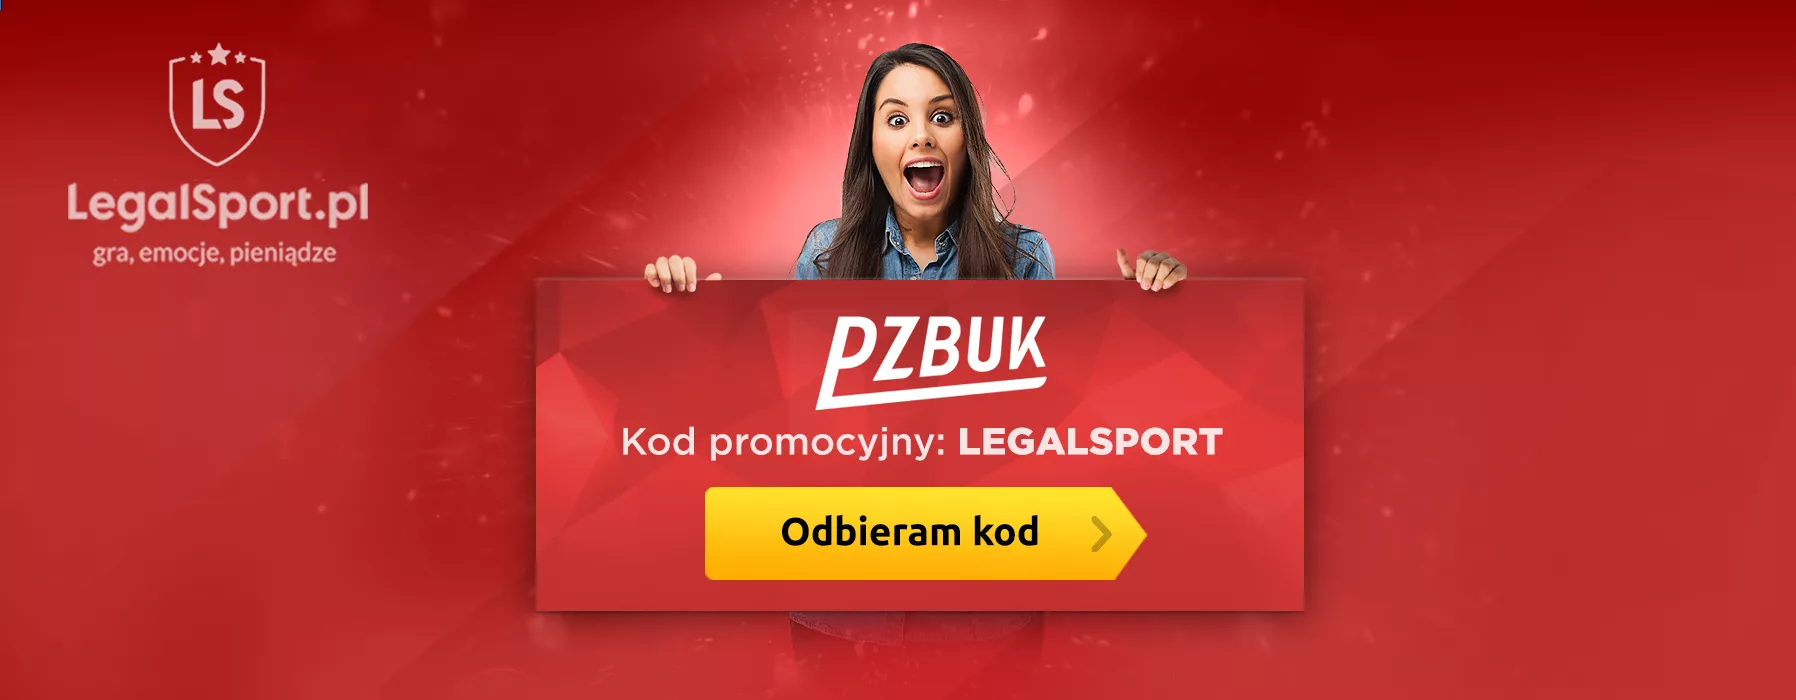 Bonus powitalny w PZBuk - cashback 200 zł  z kodem LEGALSPORT